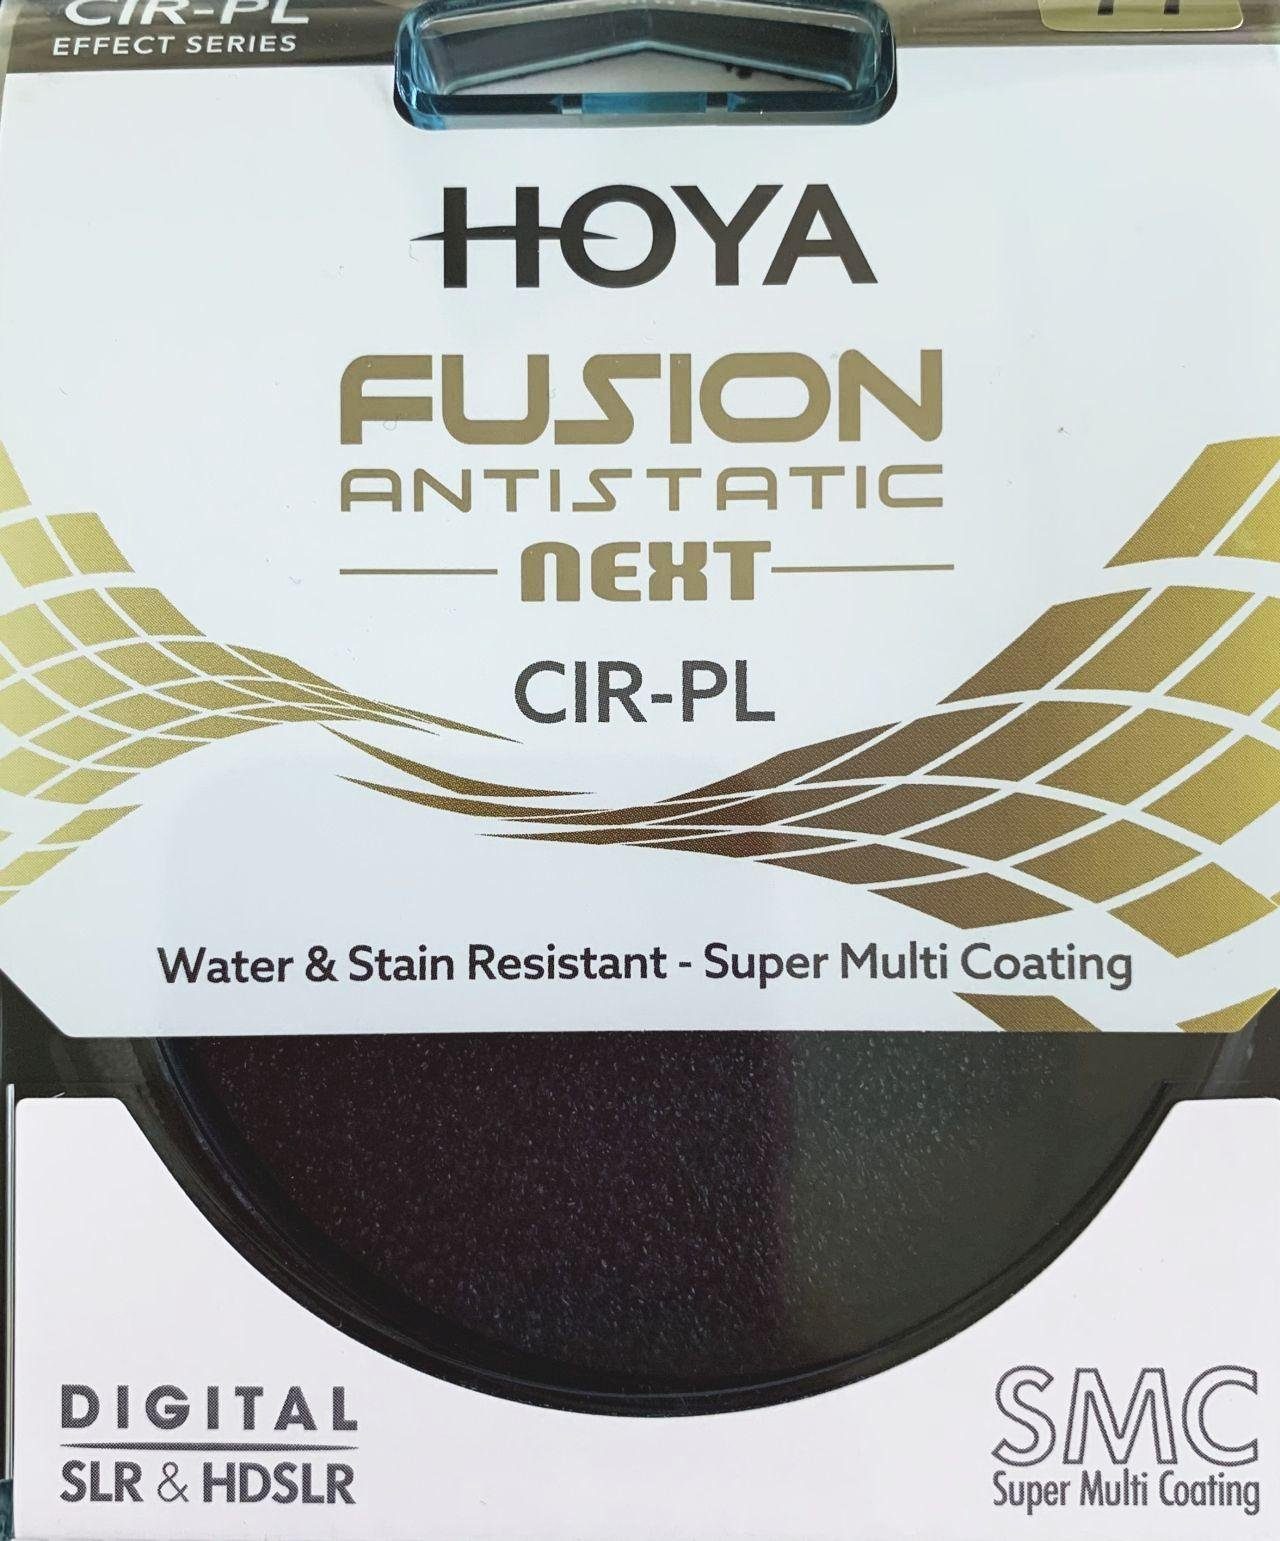 82mm Circular Hoya Next Fusion Objektivzubehör Polfilter Antistatic